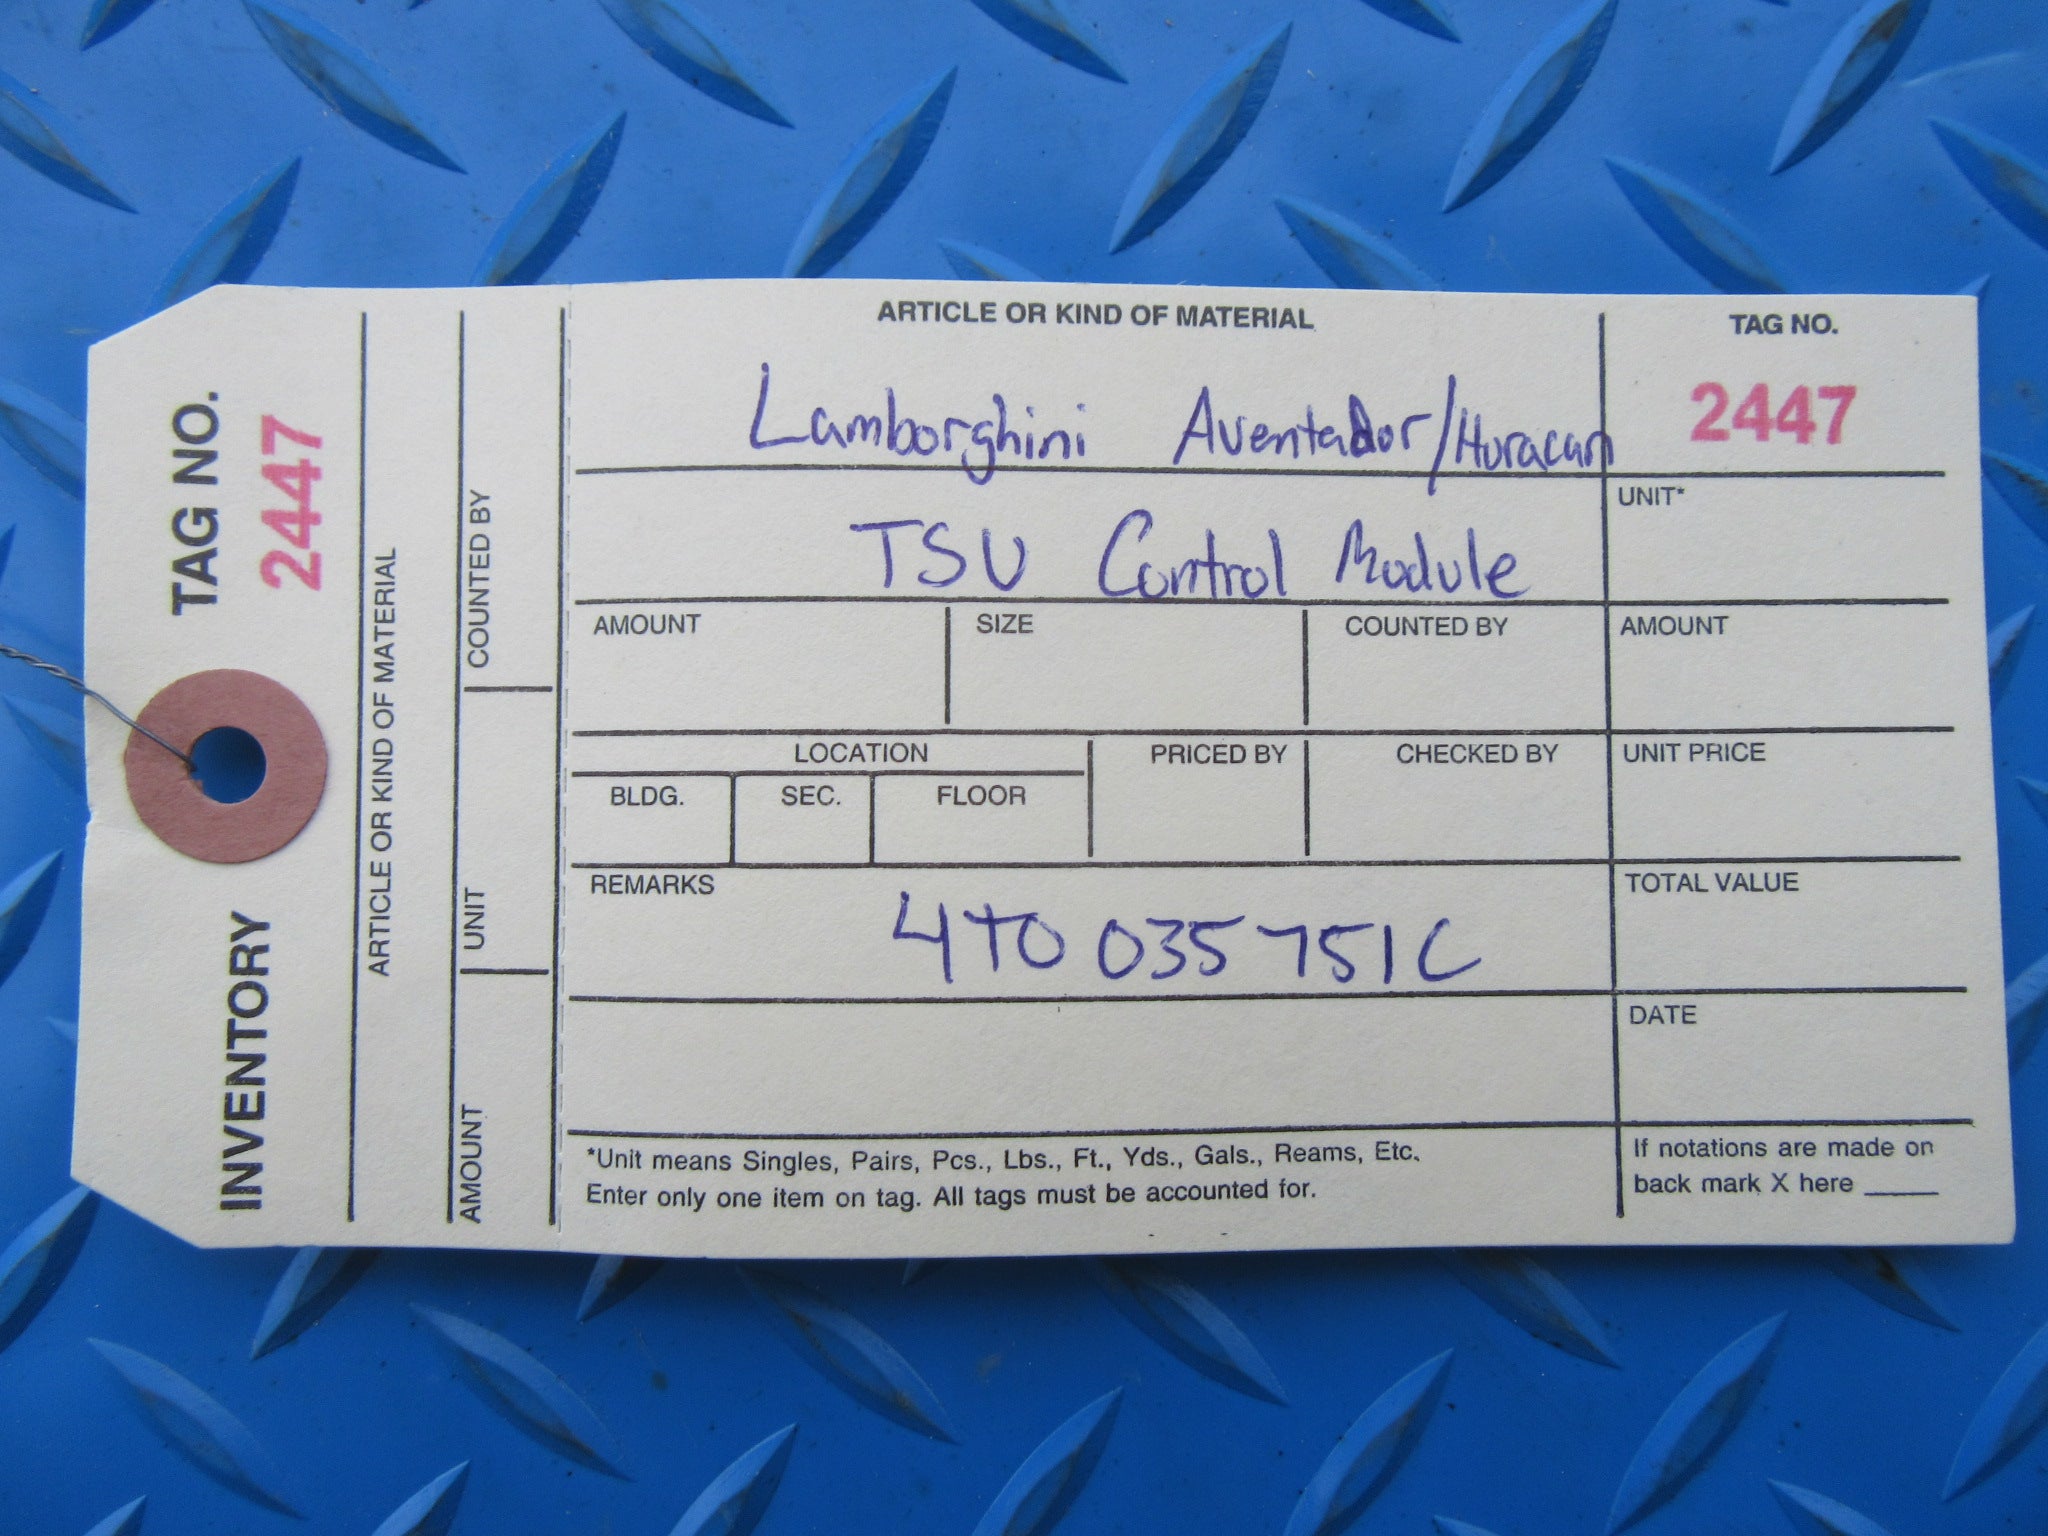 Lamborghini Aventador Huracan TSU control module #2447